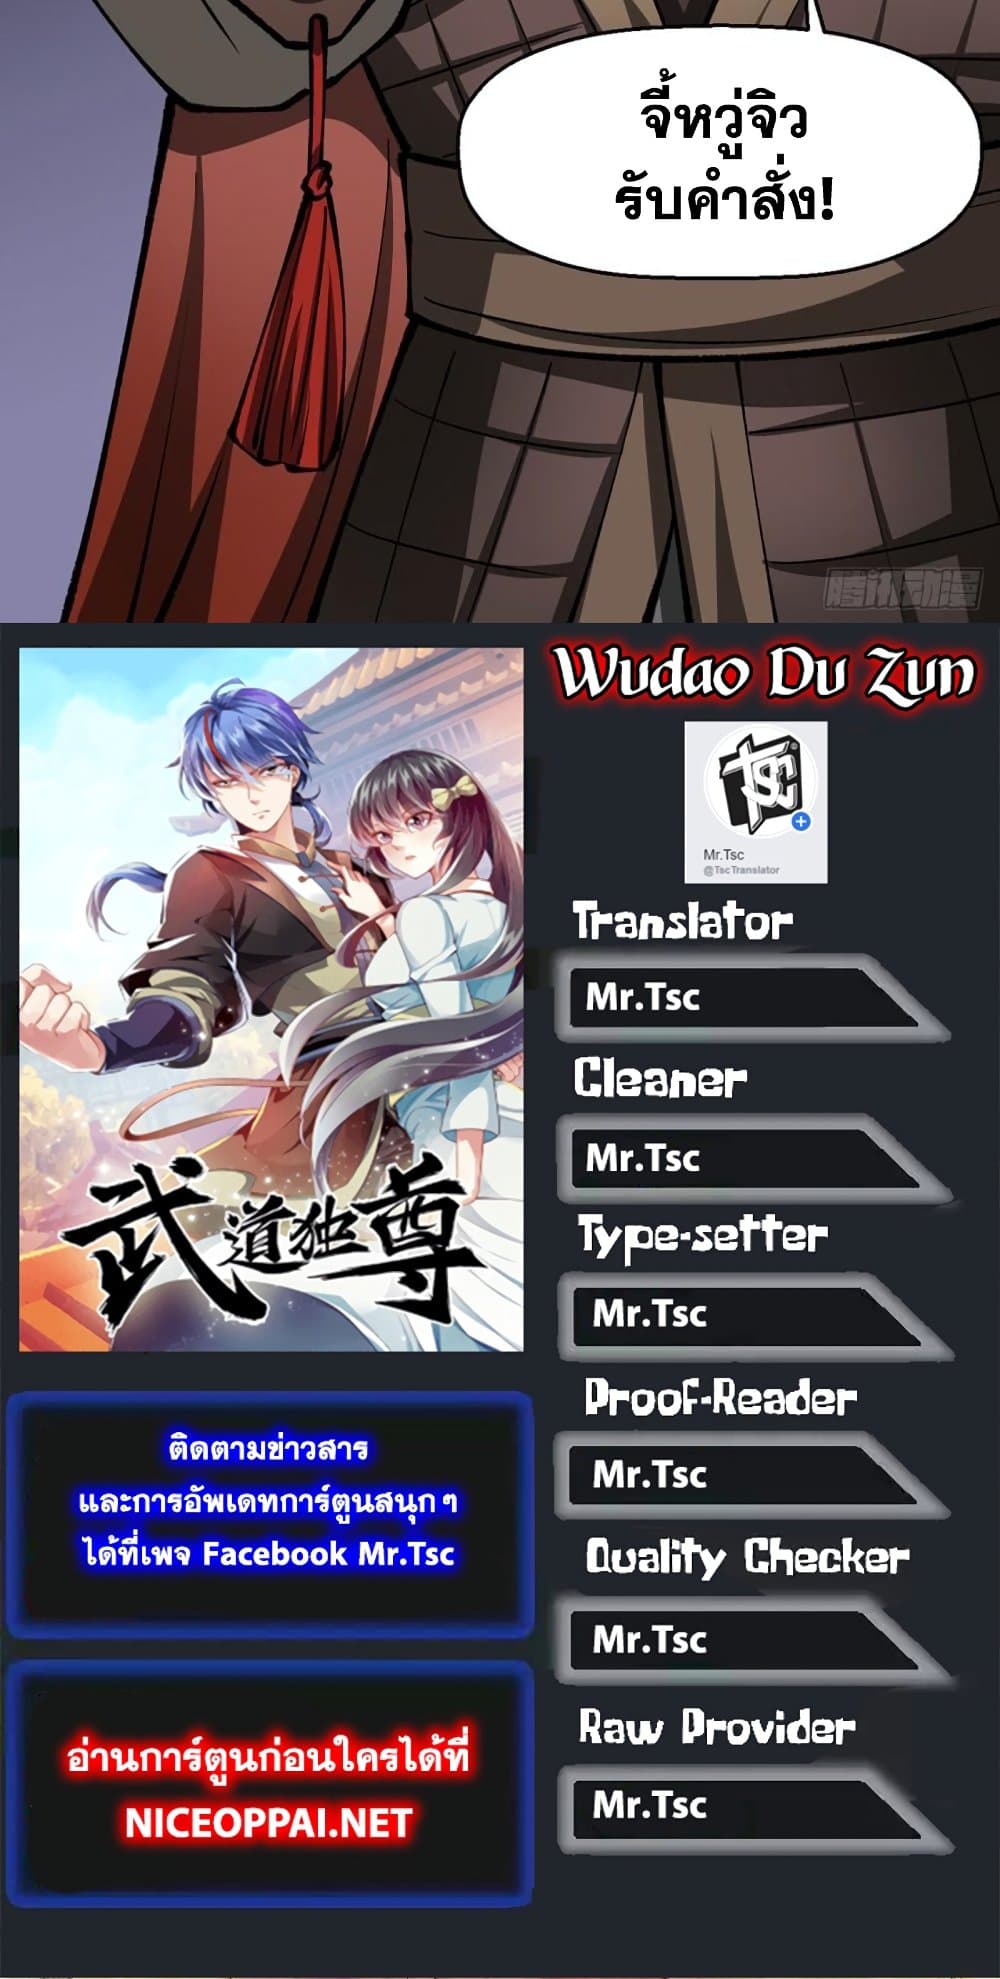 WuDao Du Zun 472 40